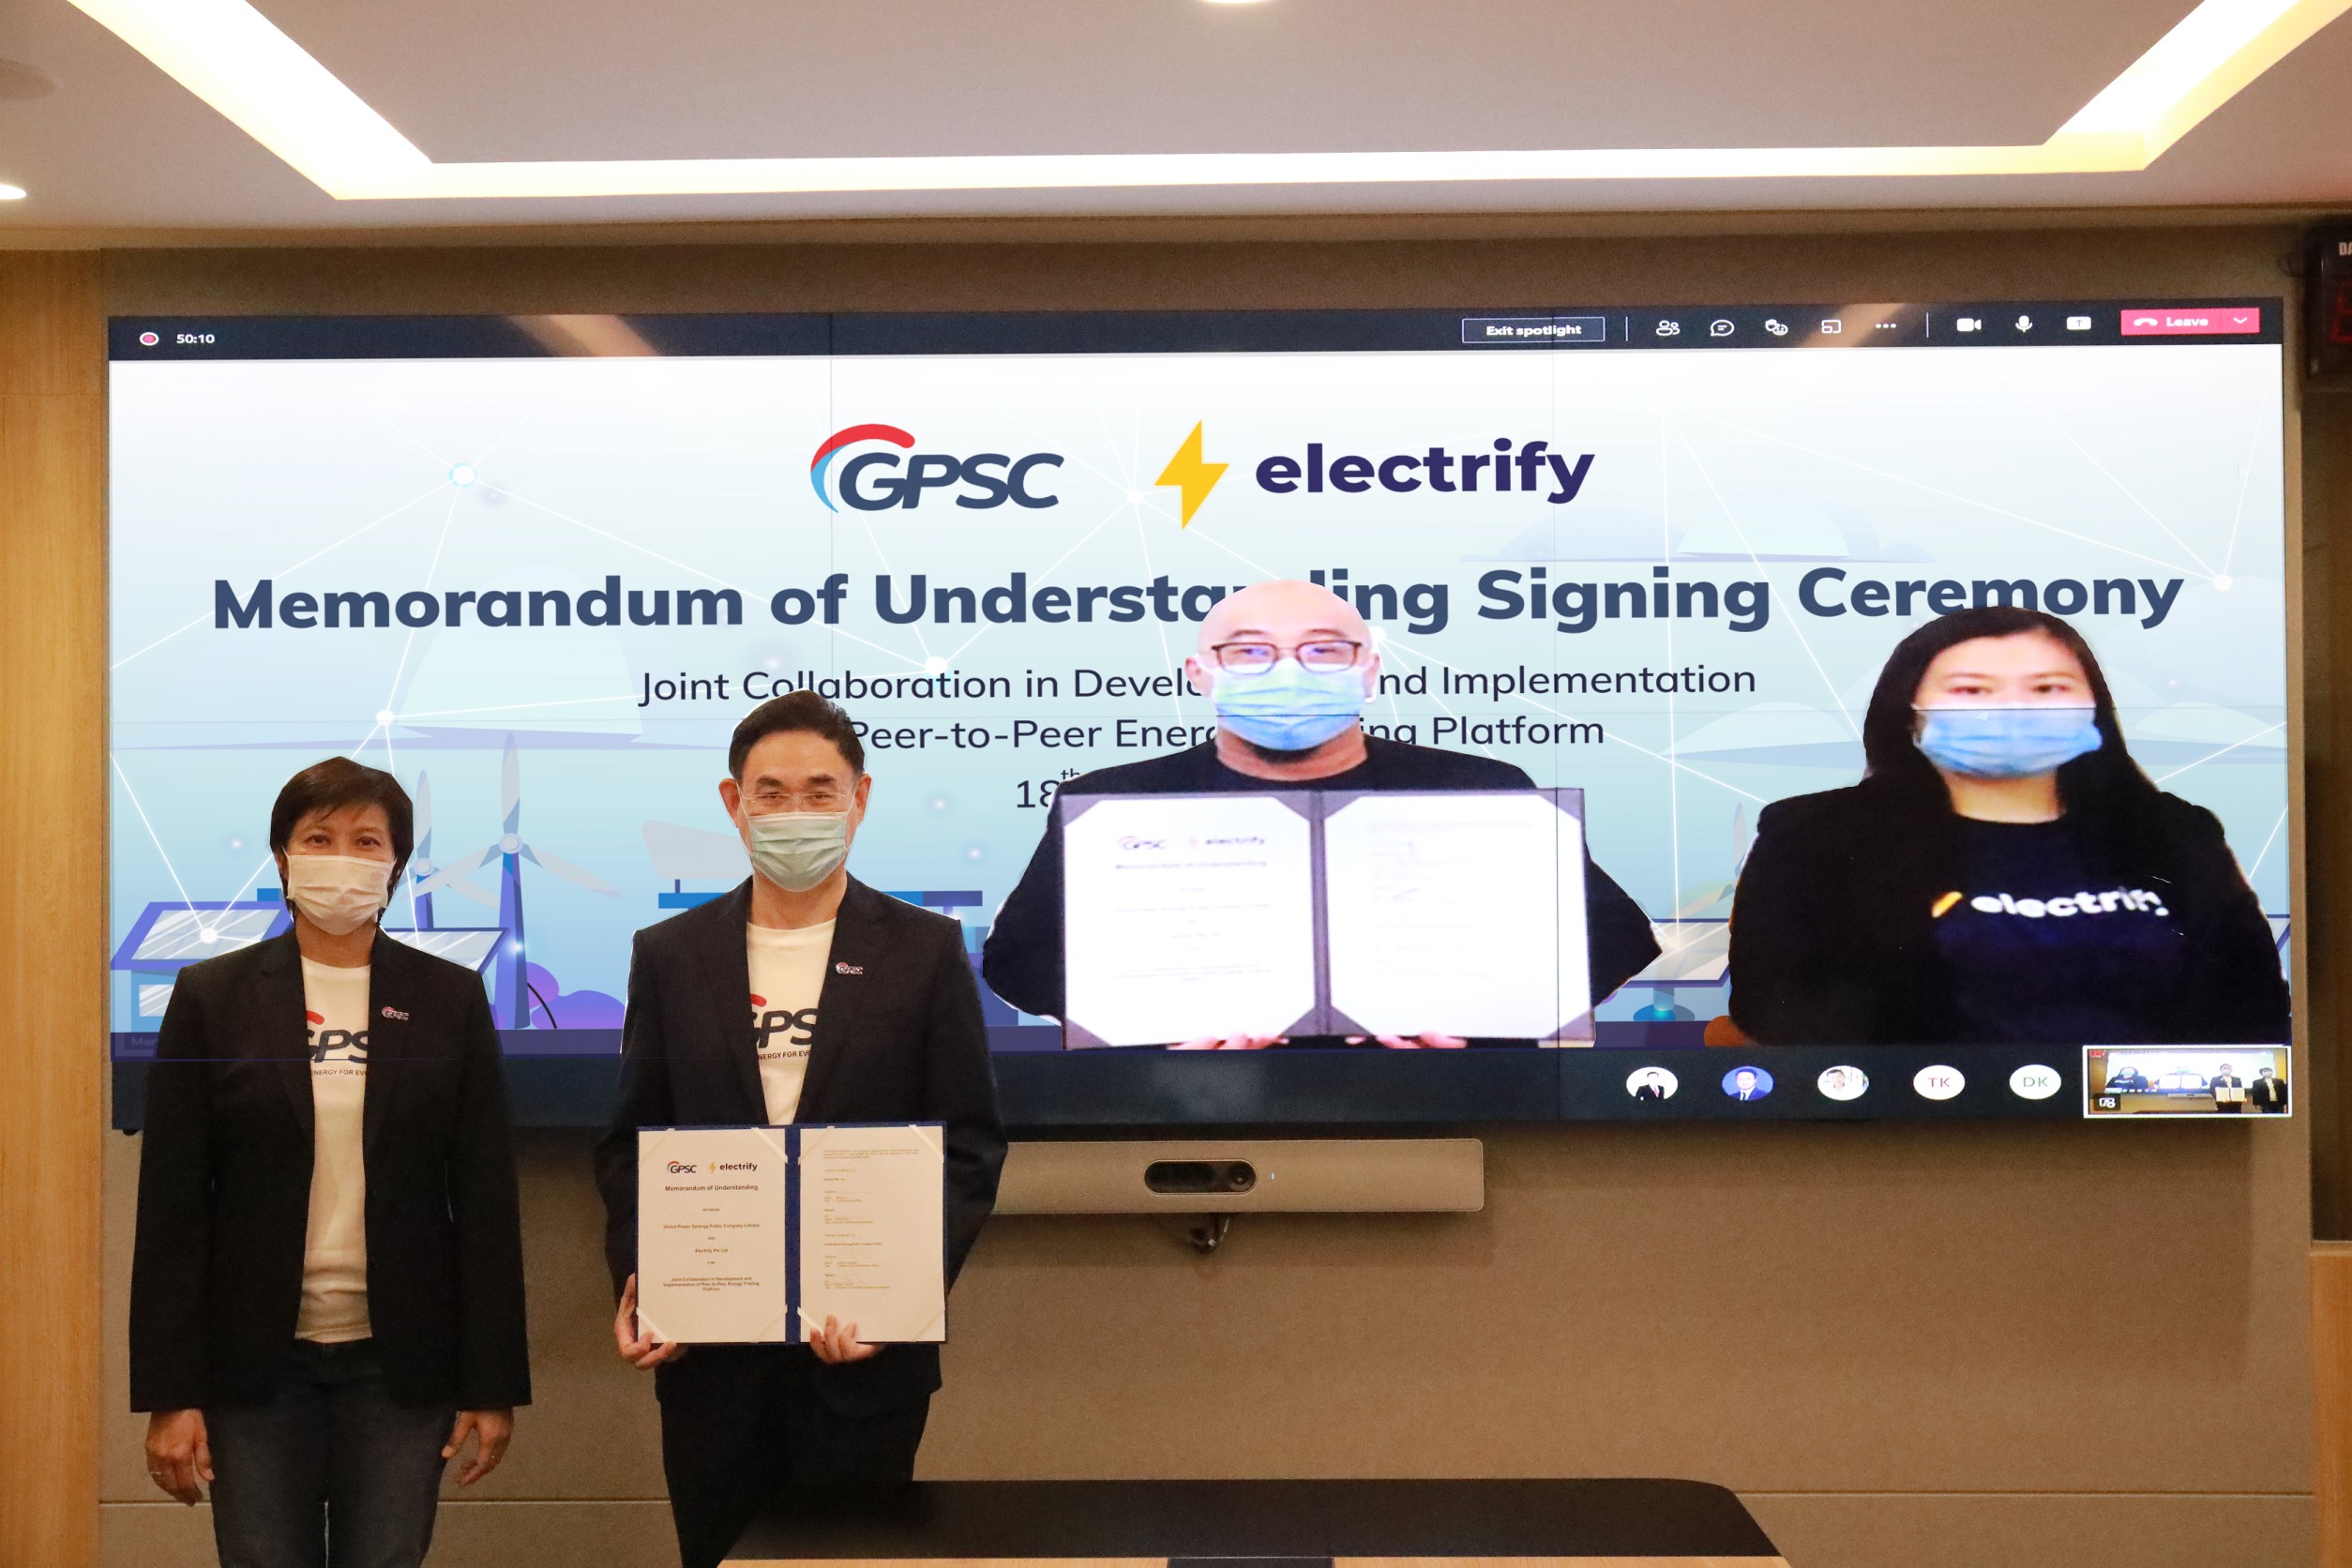 GPSC จับมือ Electrify บริษัทสตาร์ทอัพสิงคโปร์ พัฒนาแพลตฟอร์ม ซื้อขายไฟฟ้าแบบ Peer-to-Peer  เสริมความแข็งแกร่งโซลูชั่นนวัตกรรมพลังงาน